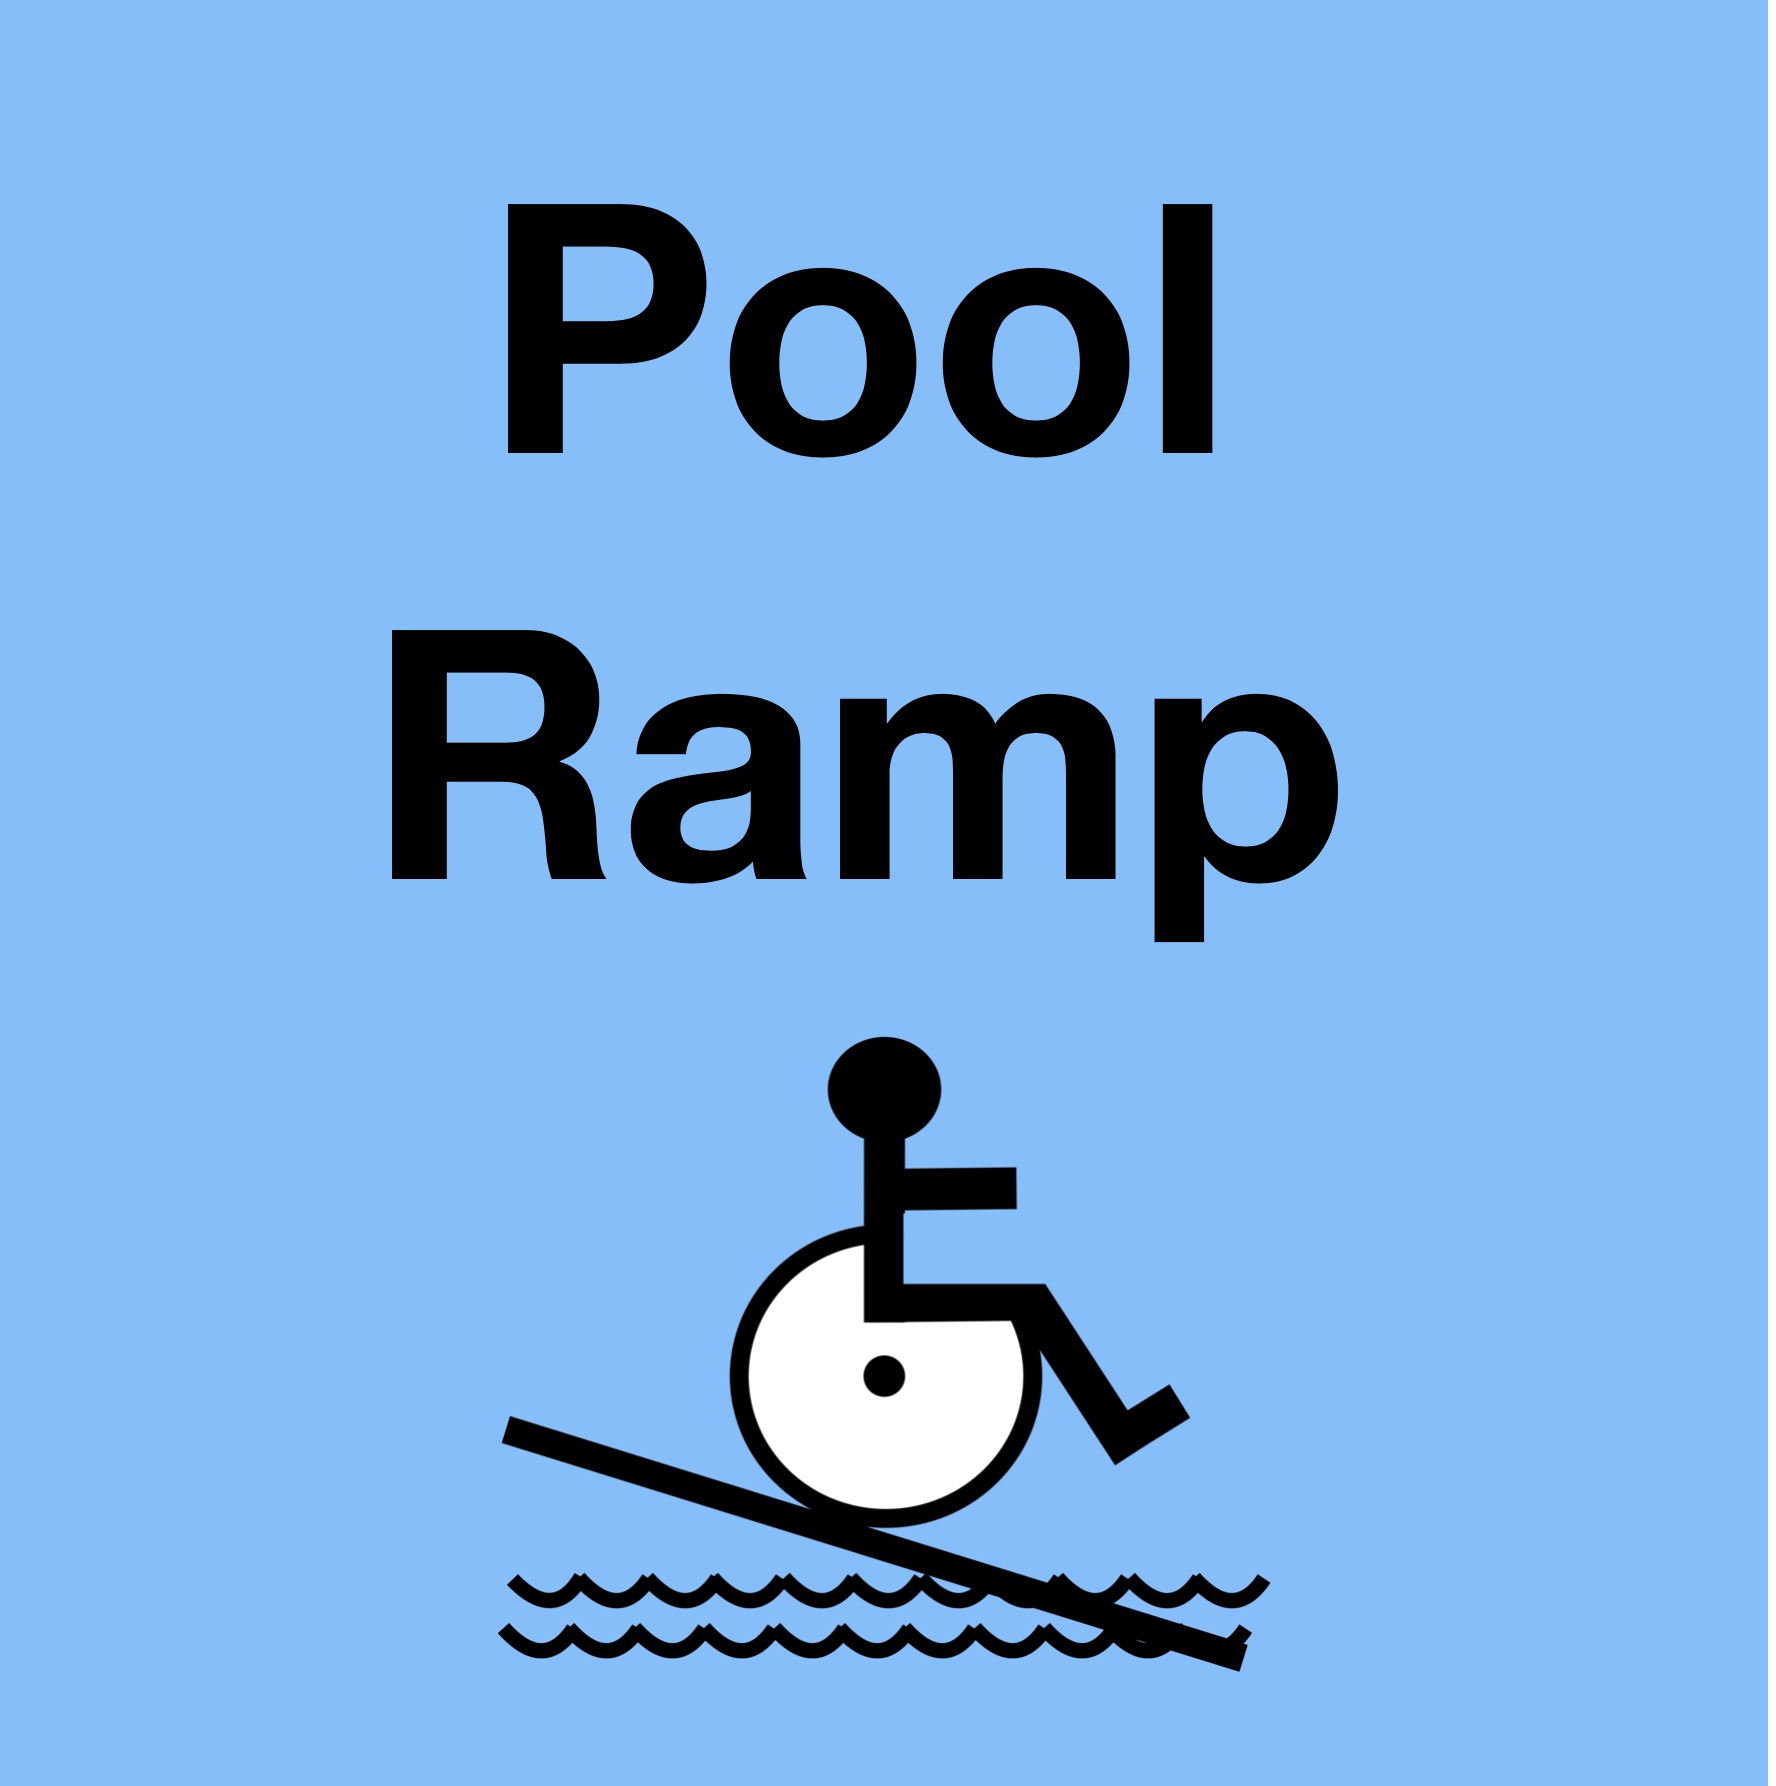 Swimming Pool Ramp In Hotel